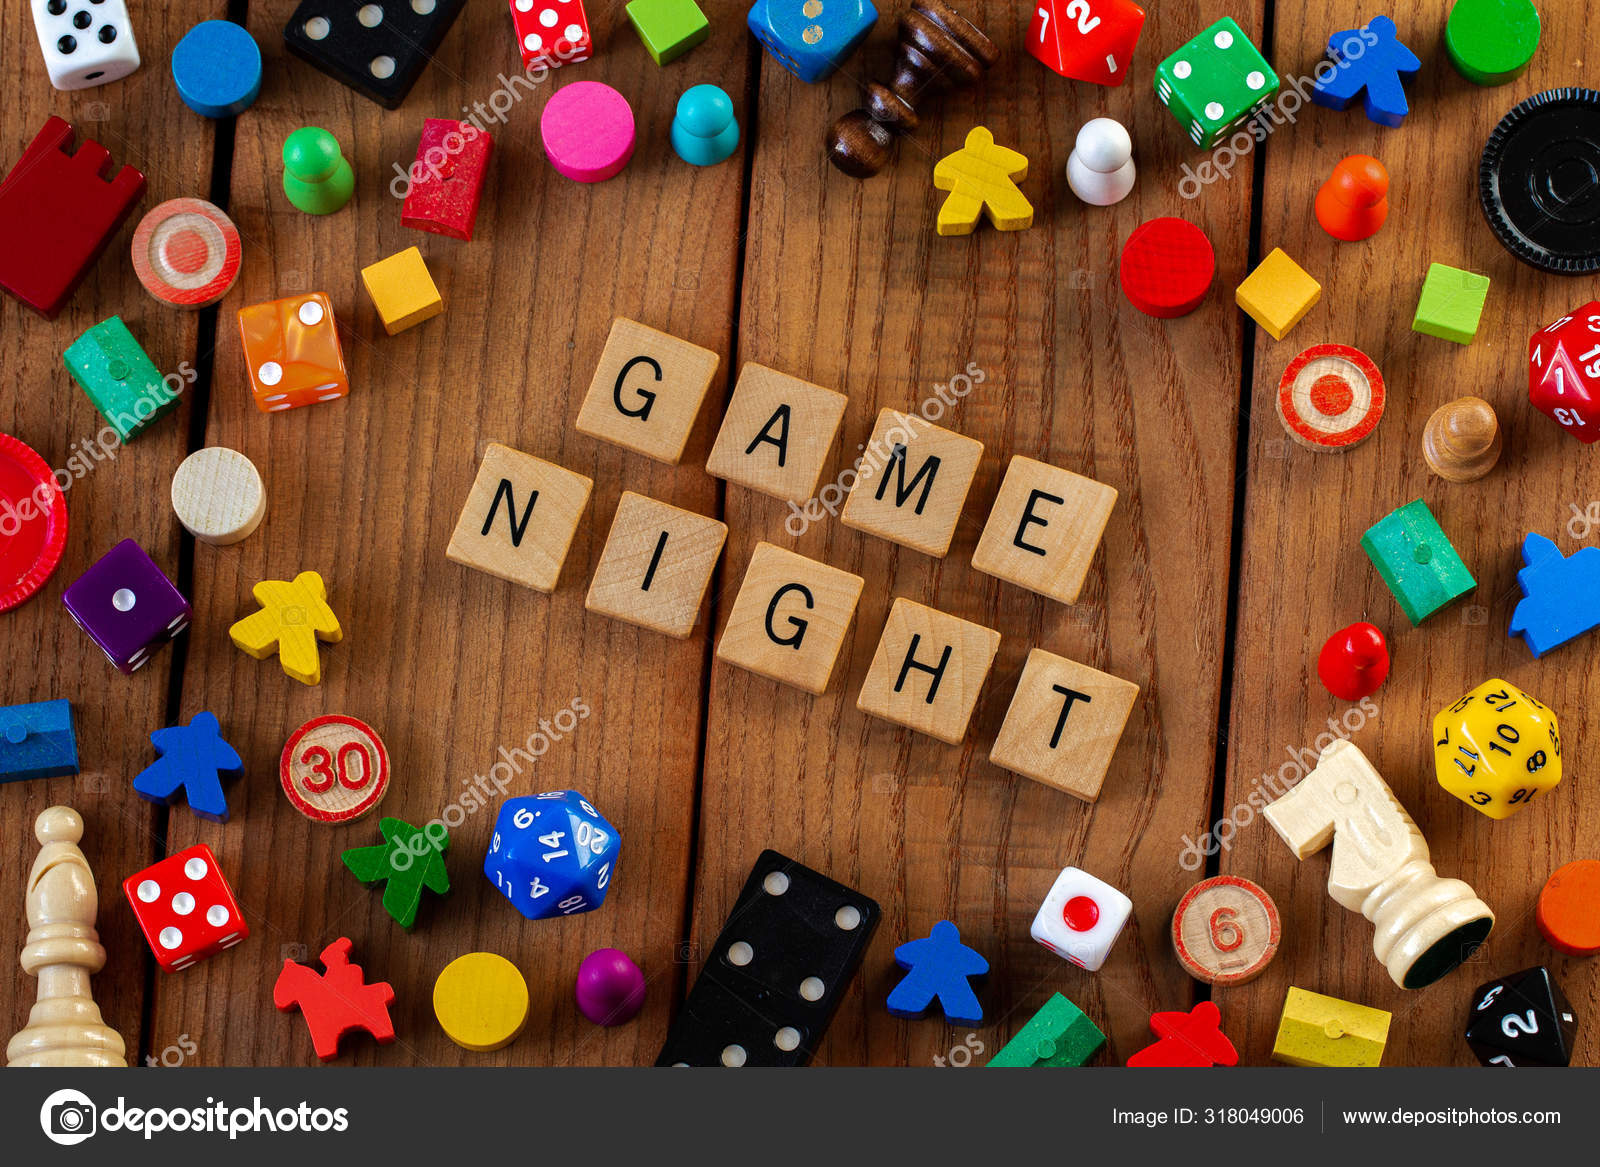 Đêm chơi game là cơ hội tuyệt vời để thư giãn và tận hưởng thời gian cùng nhau. Bạn sẵn sàng tham gia vào những trò chơi đầy thú vị và cười đùa với những người bạn thân thiết chưa?